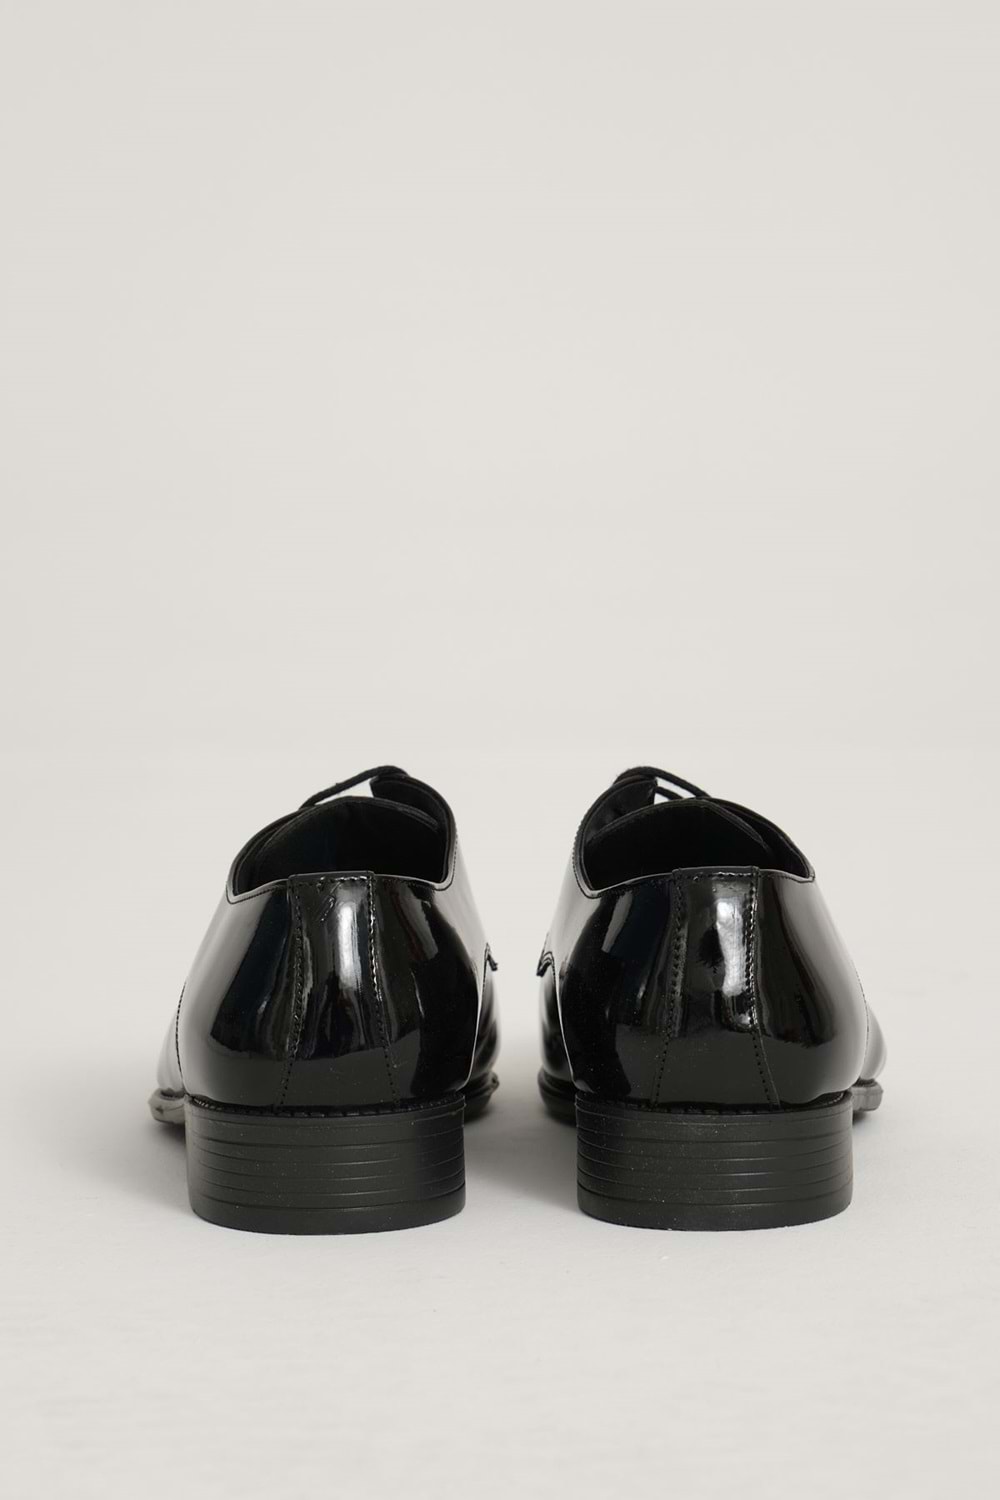 TAMBOĞA Siyah Klasik Rugan Suni Deri Erkek Ayakkabı